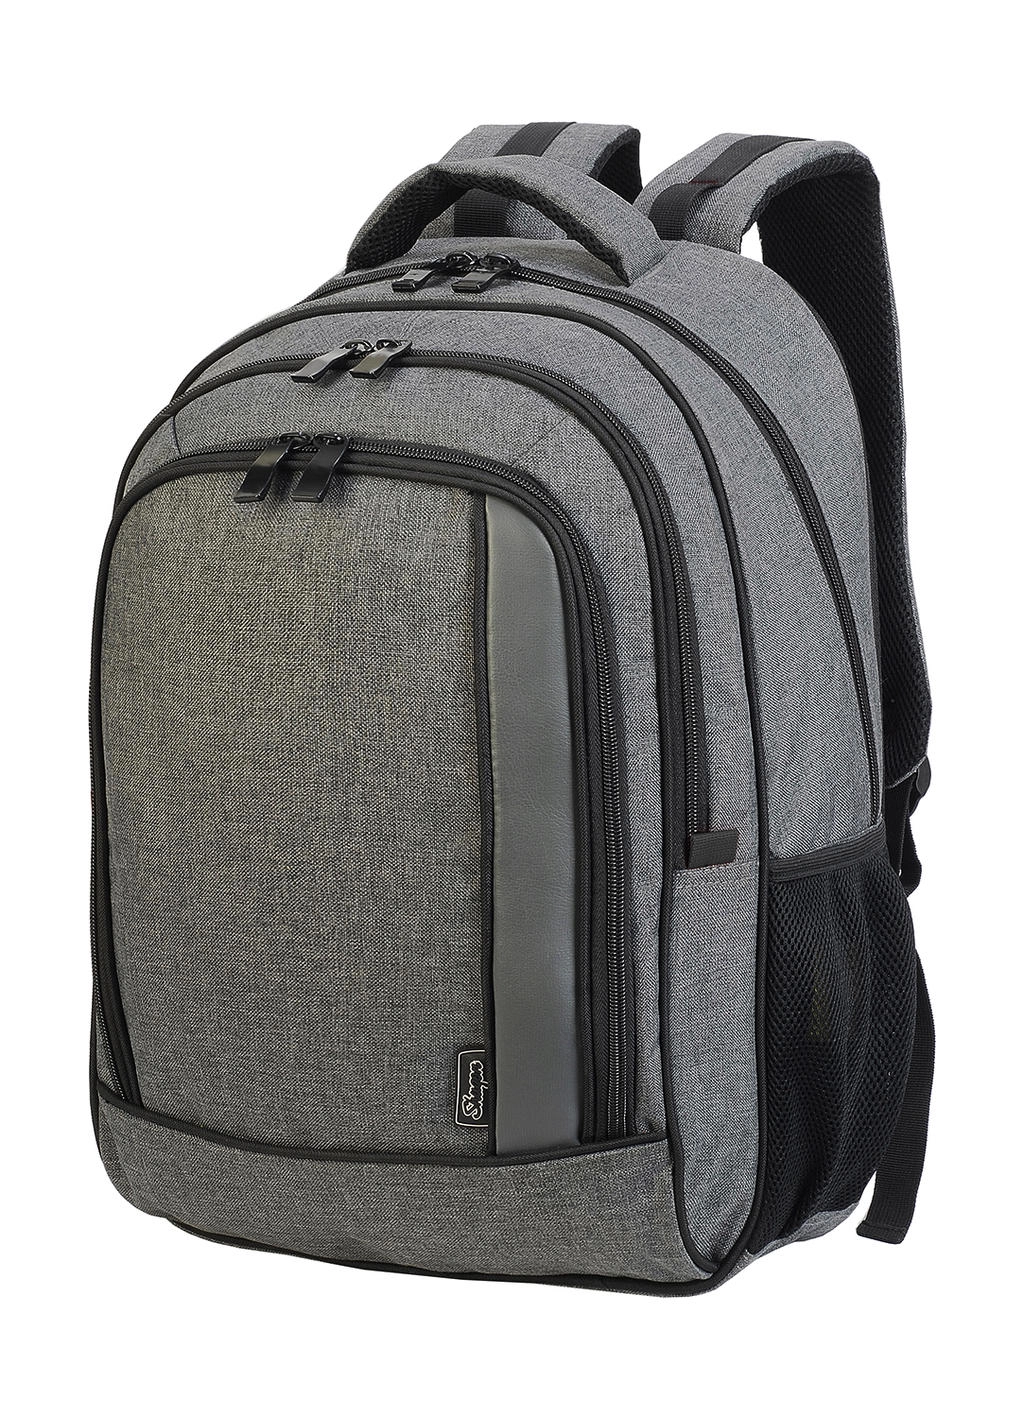 Frankfurt Smart Laptop Backpack zum Besticken und Bedrucken in der Farbe Grey Melange/Black mit Ihren Logo, Schriftzug oder Motiv.